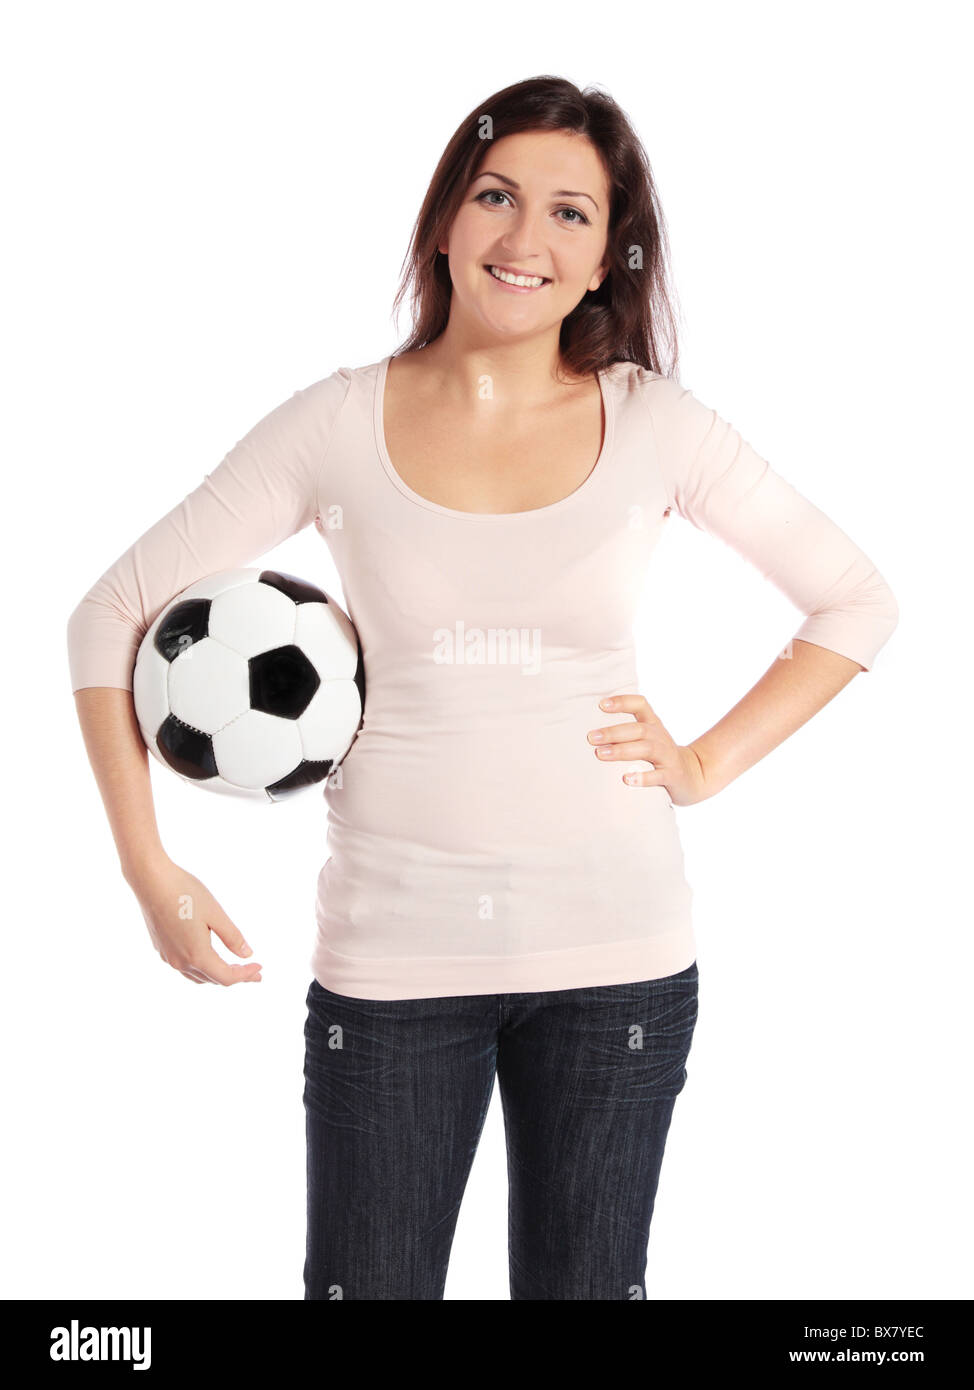 Jolie Jeune femme tenant un ballon de soccer. Tous isolé sur fond blanc. Banque D'Images